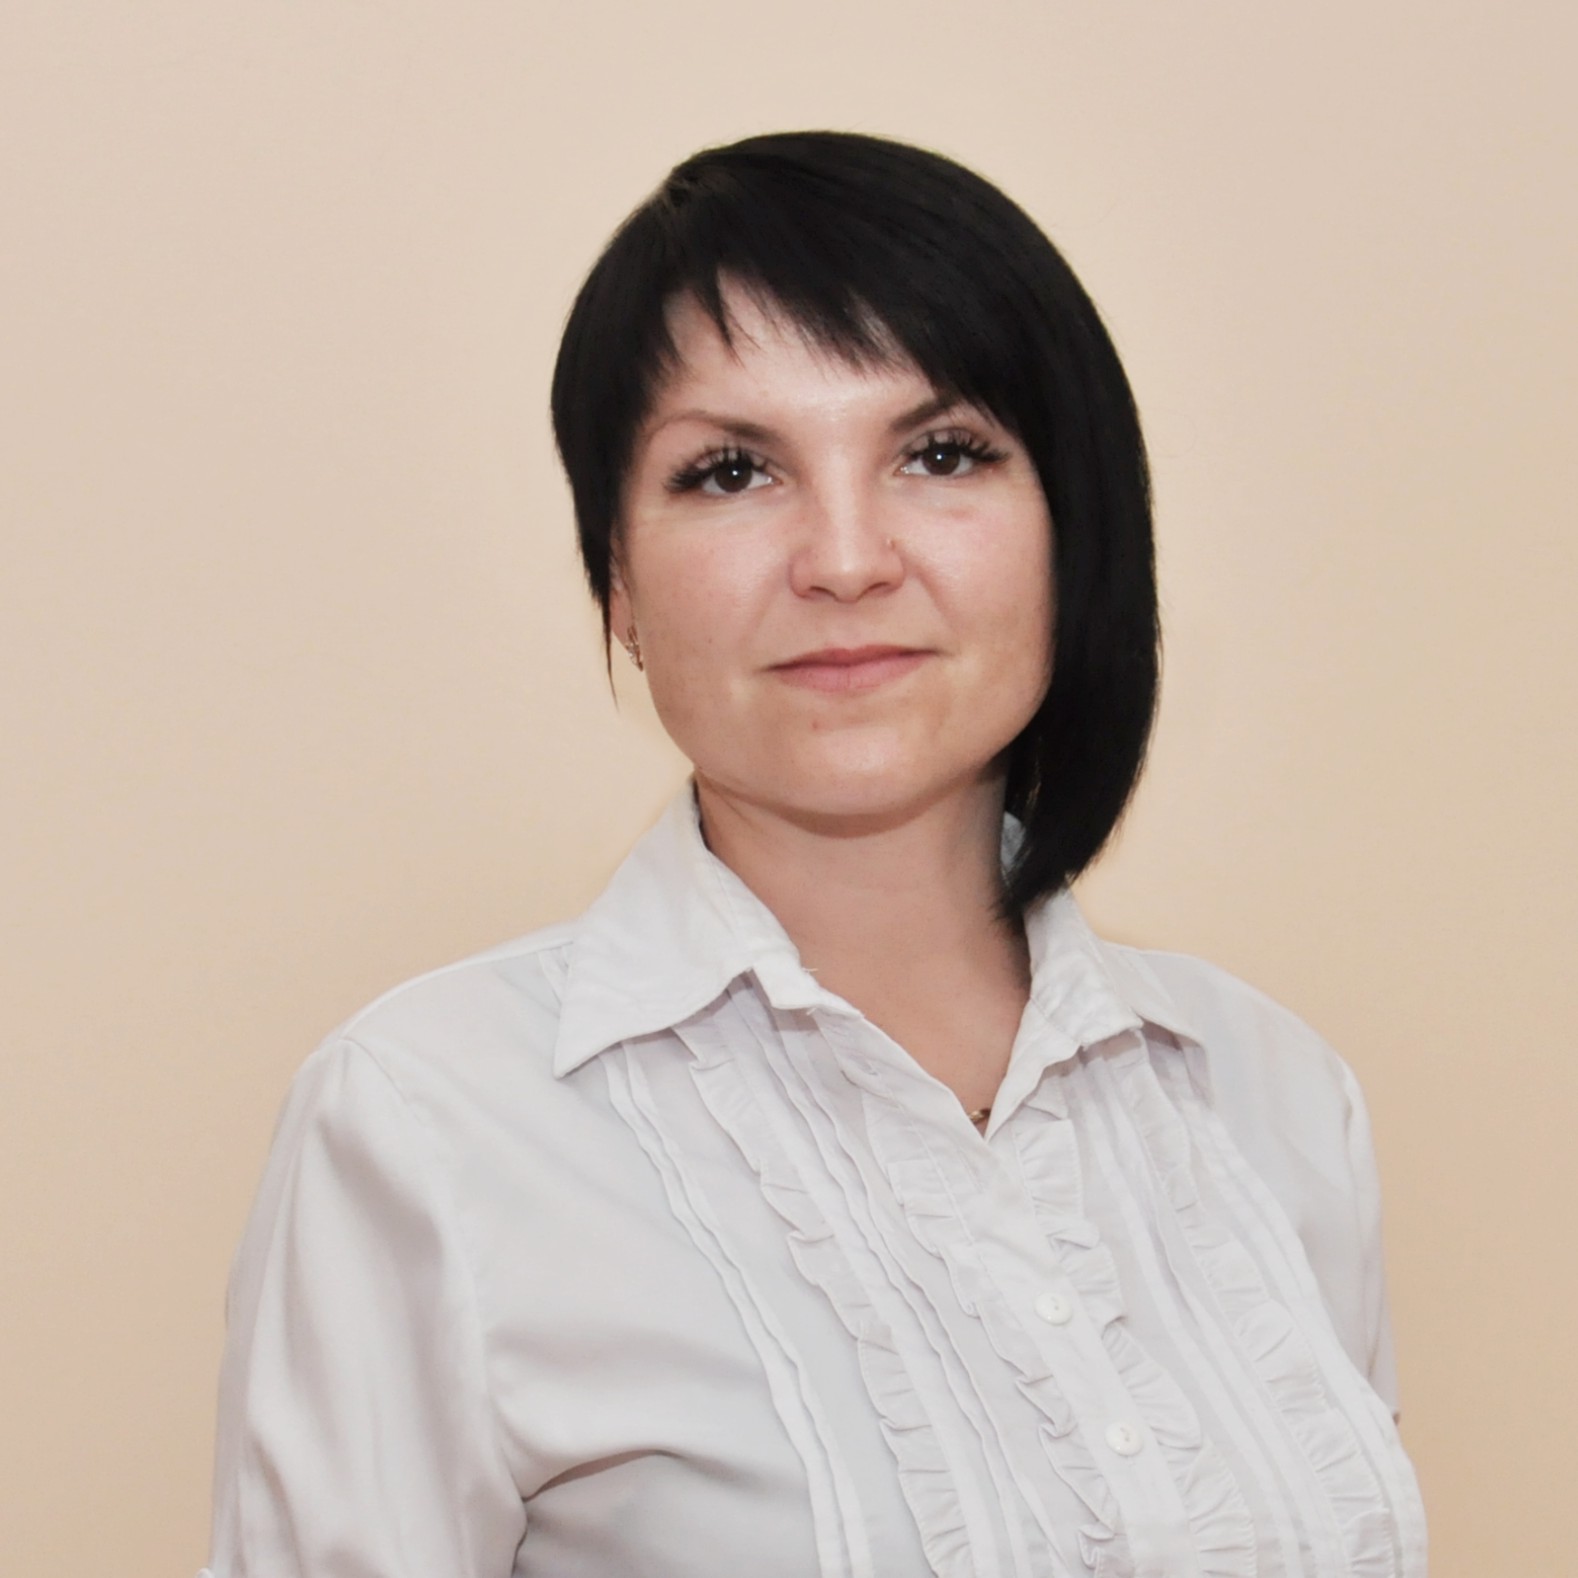 Педагогический работник Безверхова Анна Евгеньевна.